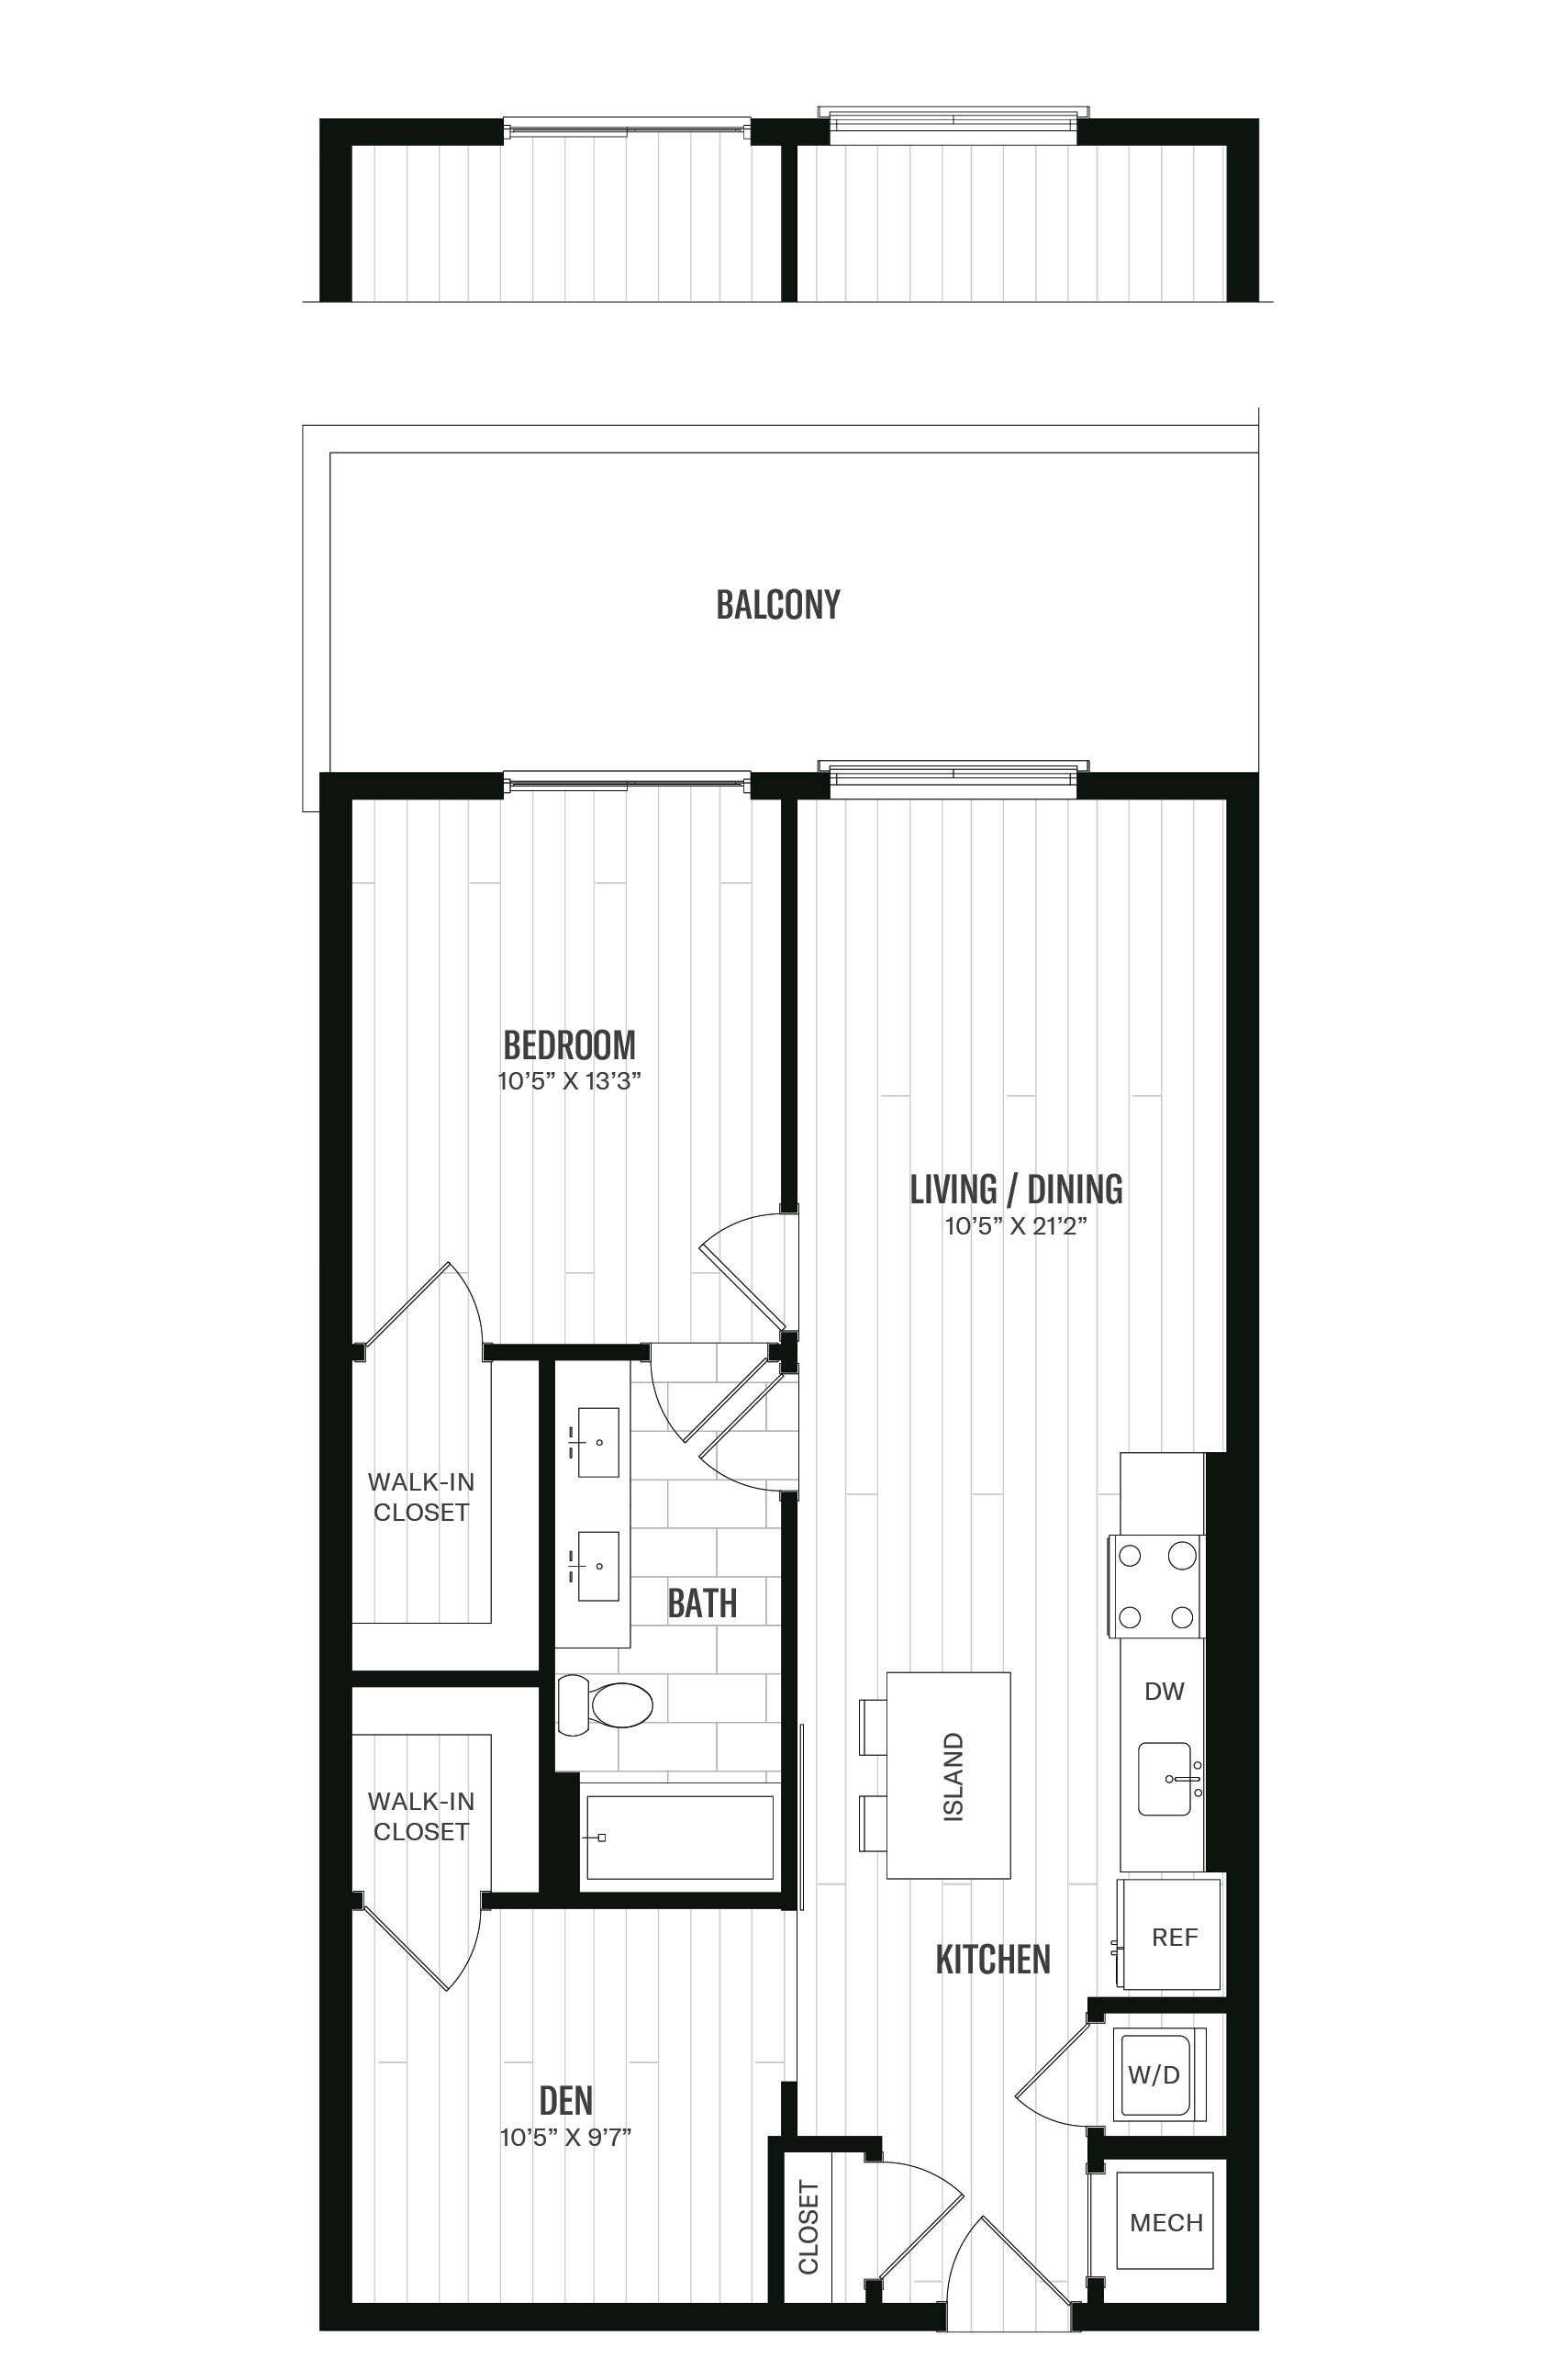 Floorplan image of unit 621